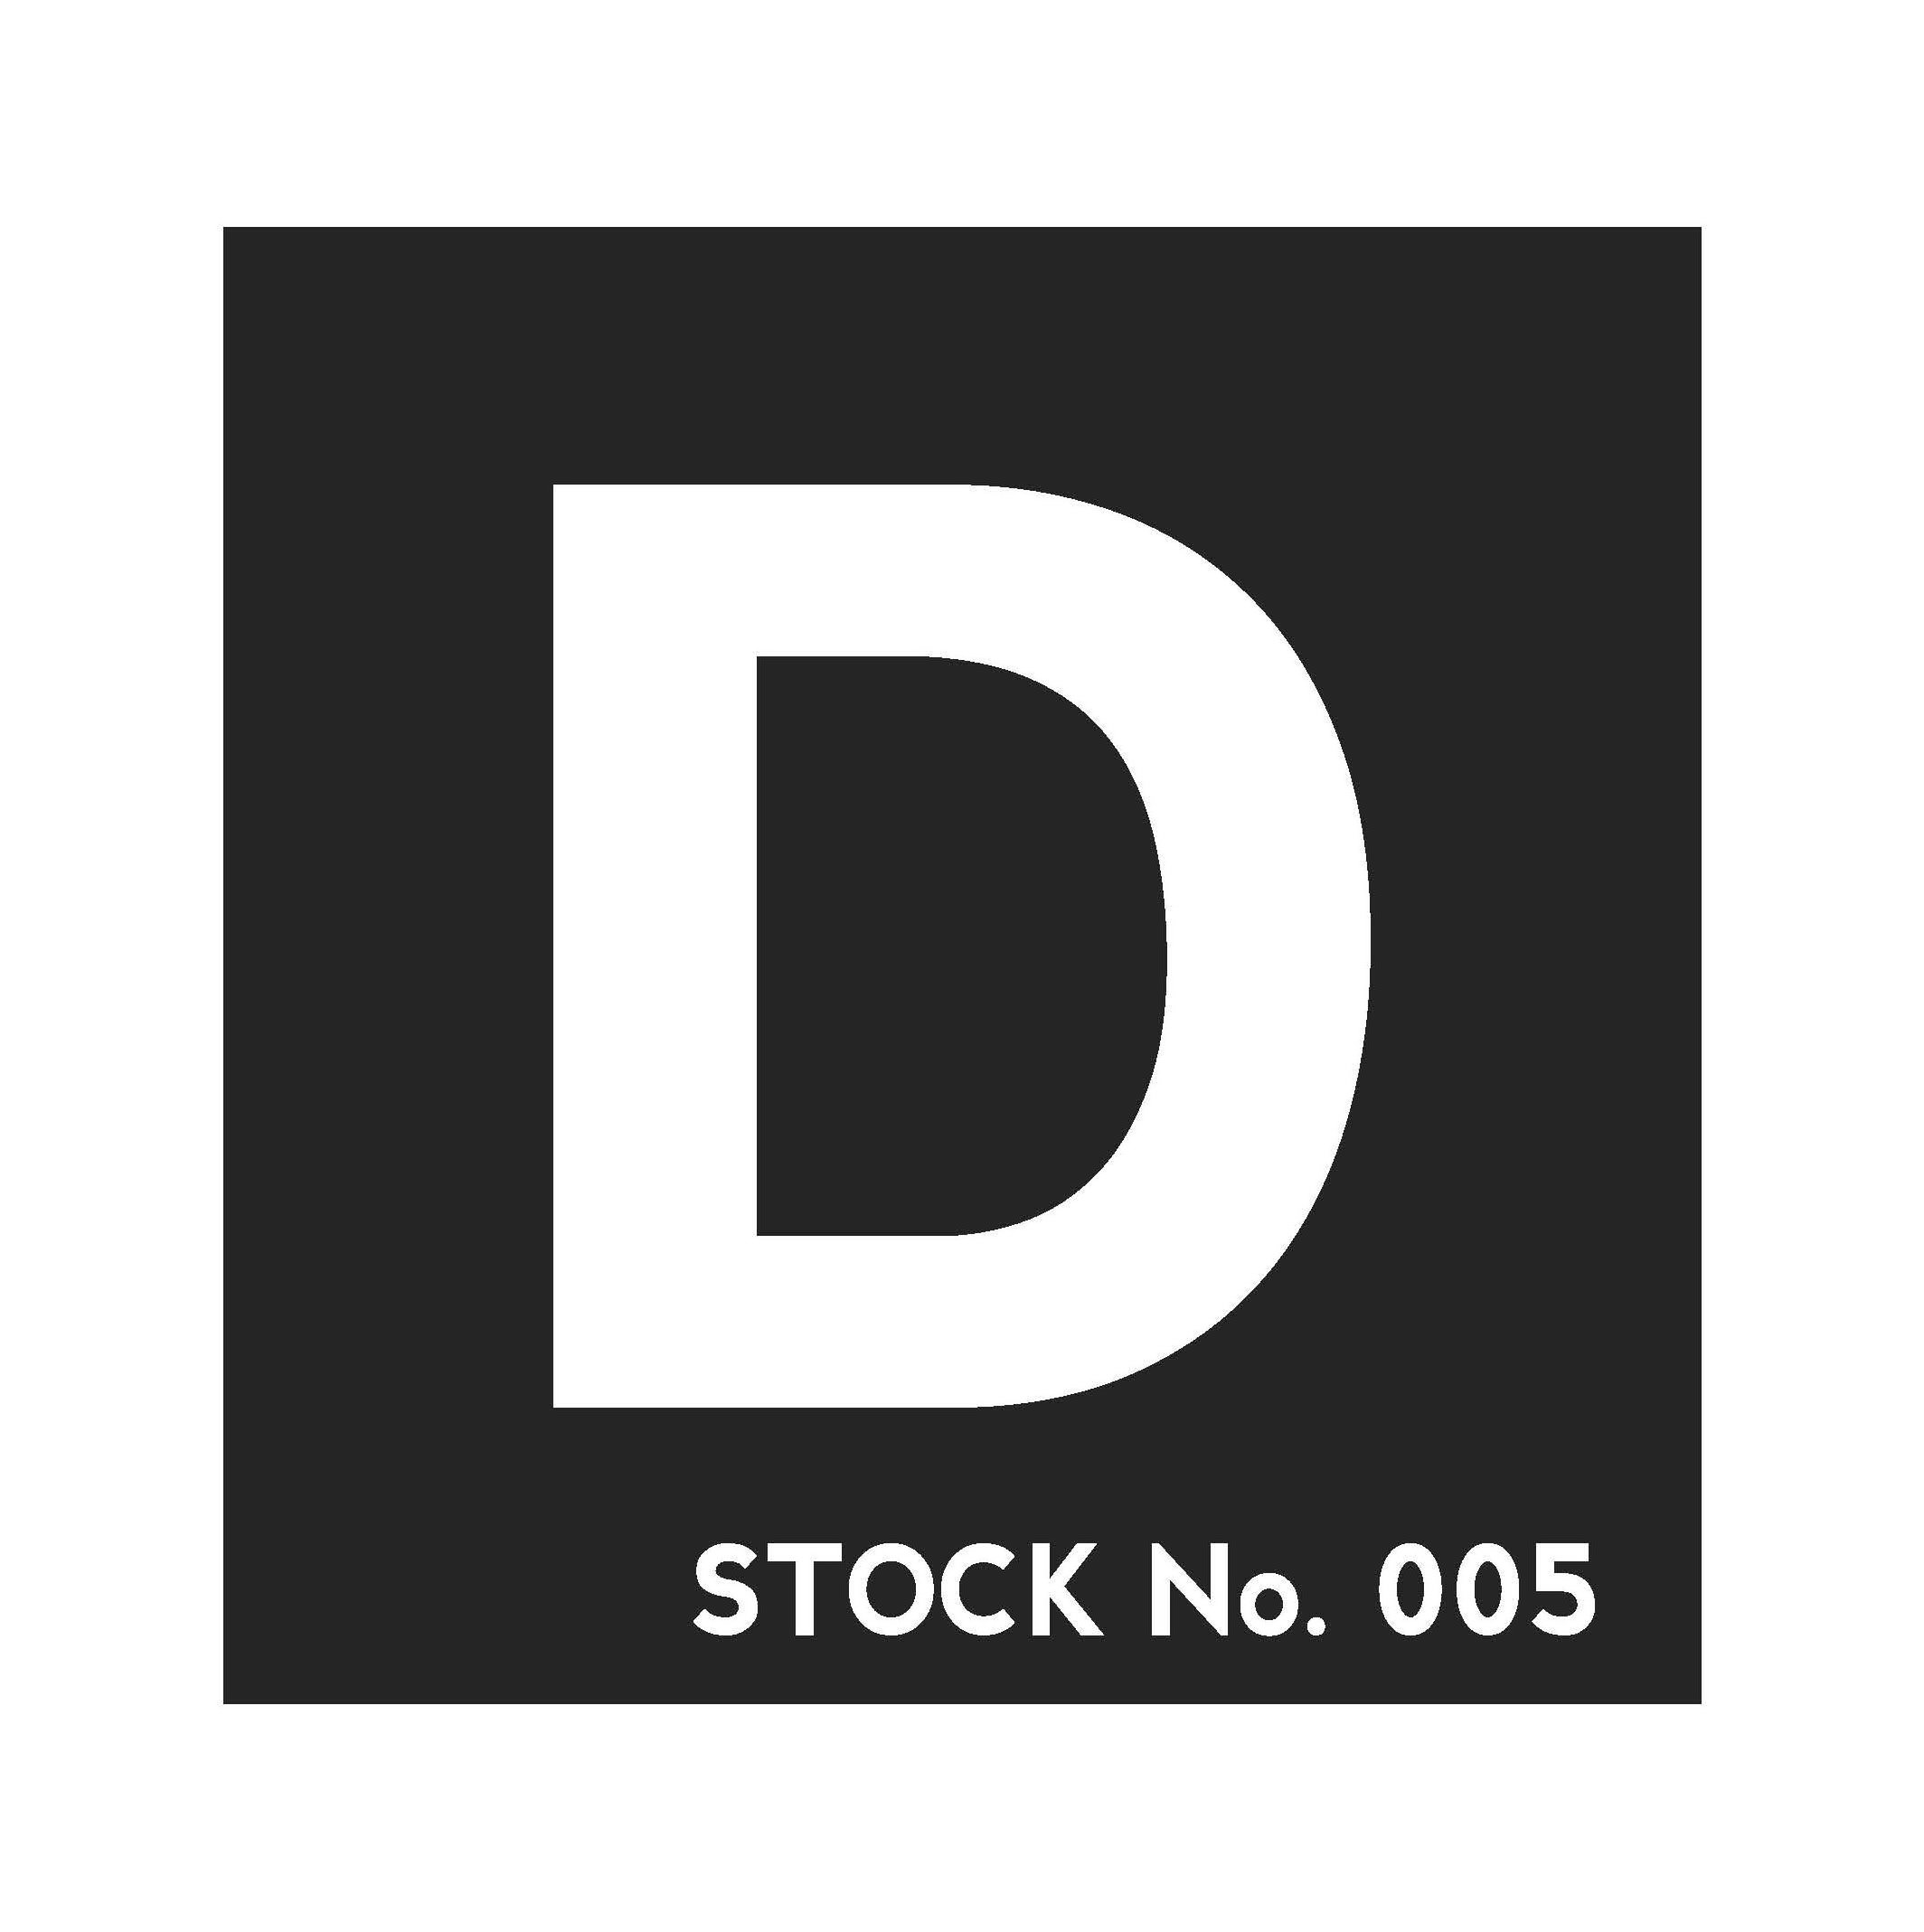  D STOCK NO. 005